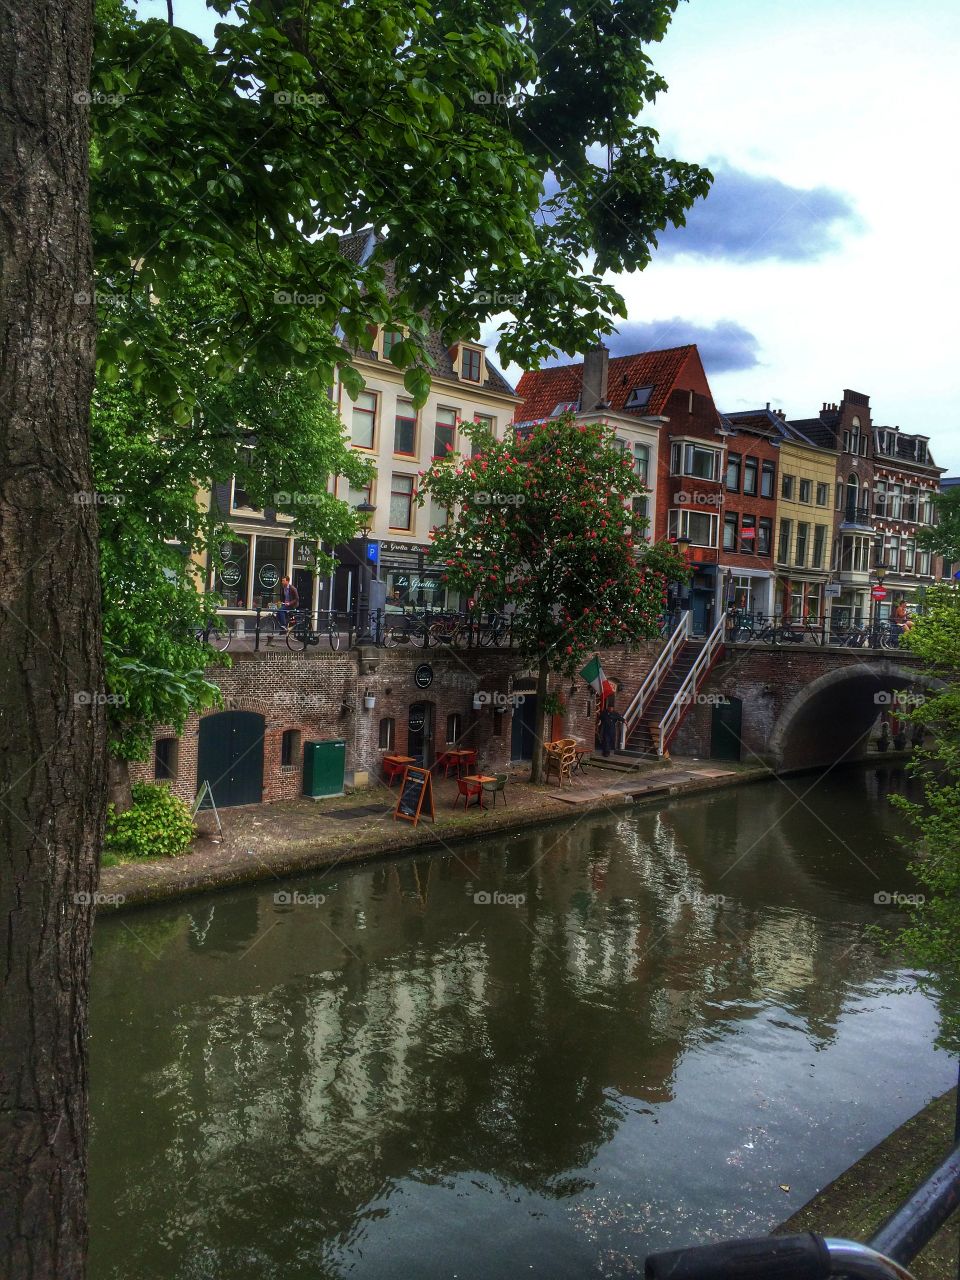 Utrecht canal. Utrecht canal